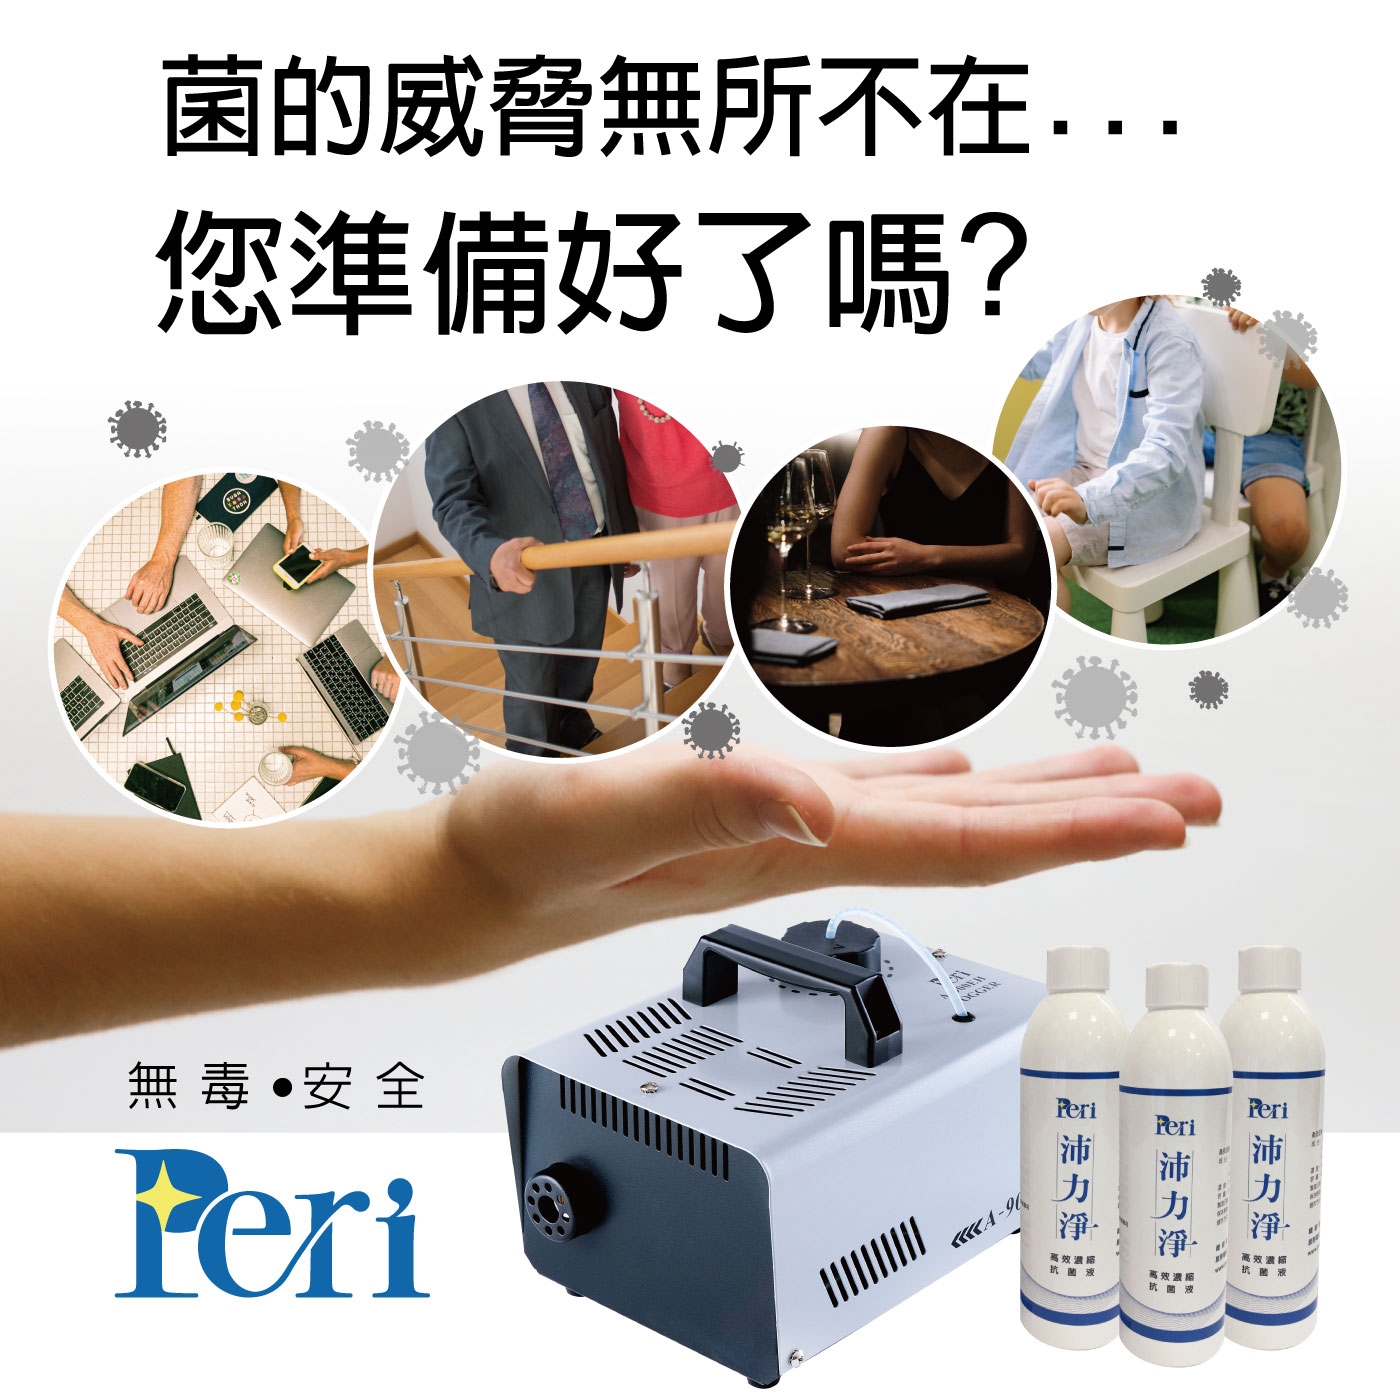 為商家而生的專業抗菌噴霧品牌 -『Peri沛力淨』